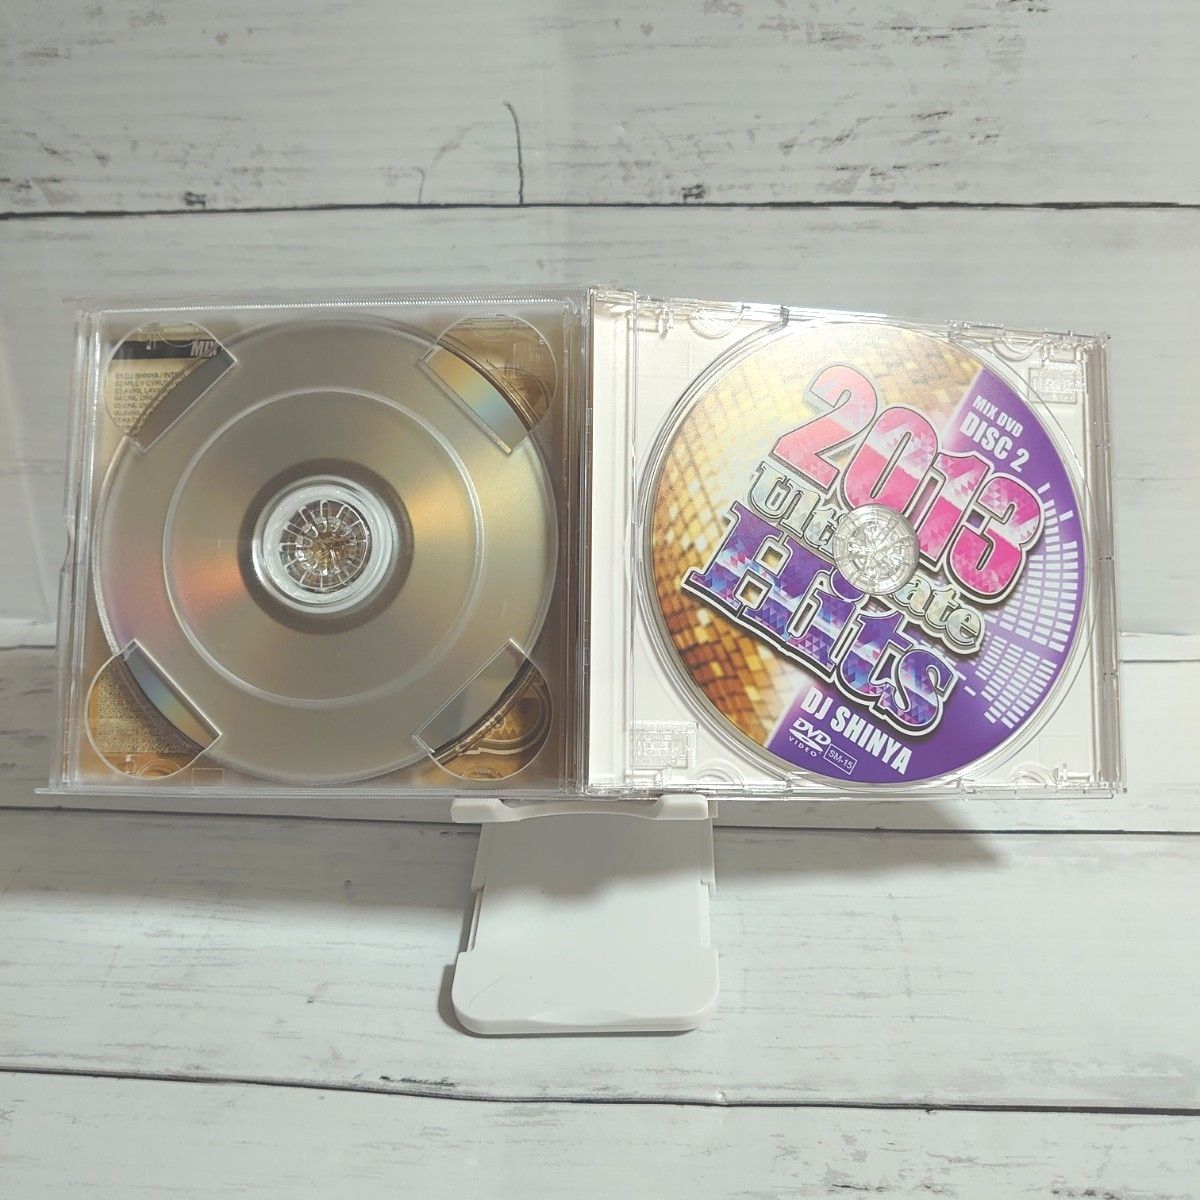 2013 Ultimate His DJ_SHINYA 2DVD+1CD